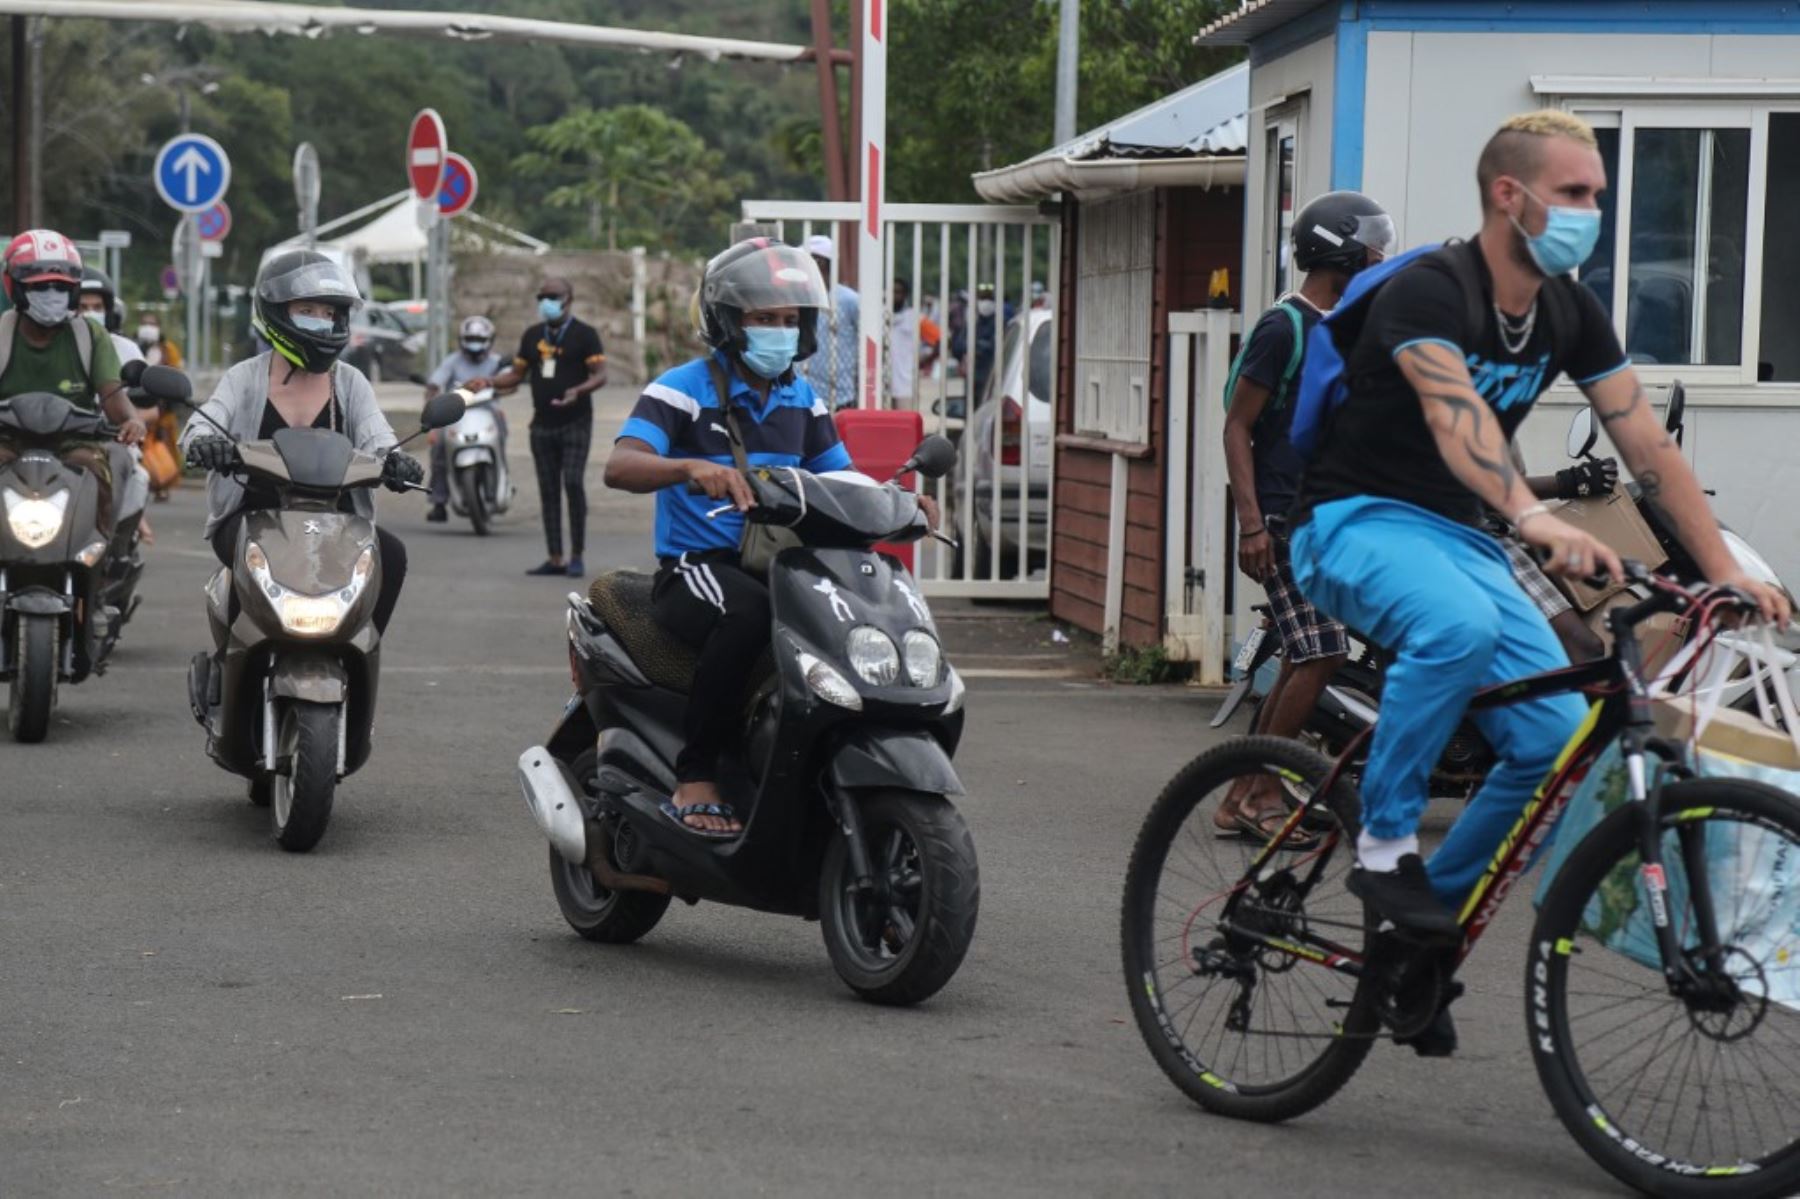 Los pasajeros de bicicletas y scooters con máscaras protectoras se dirigen a bordo del ferry en Mamoudzou, en la isla francesa de Mayotte, en el Océano Índico. Foto: AFP